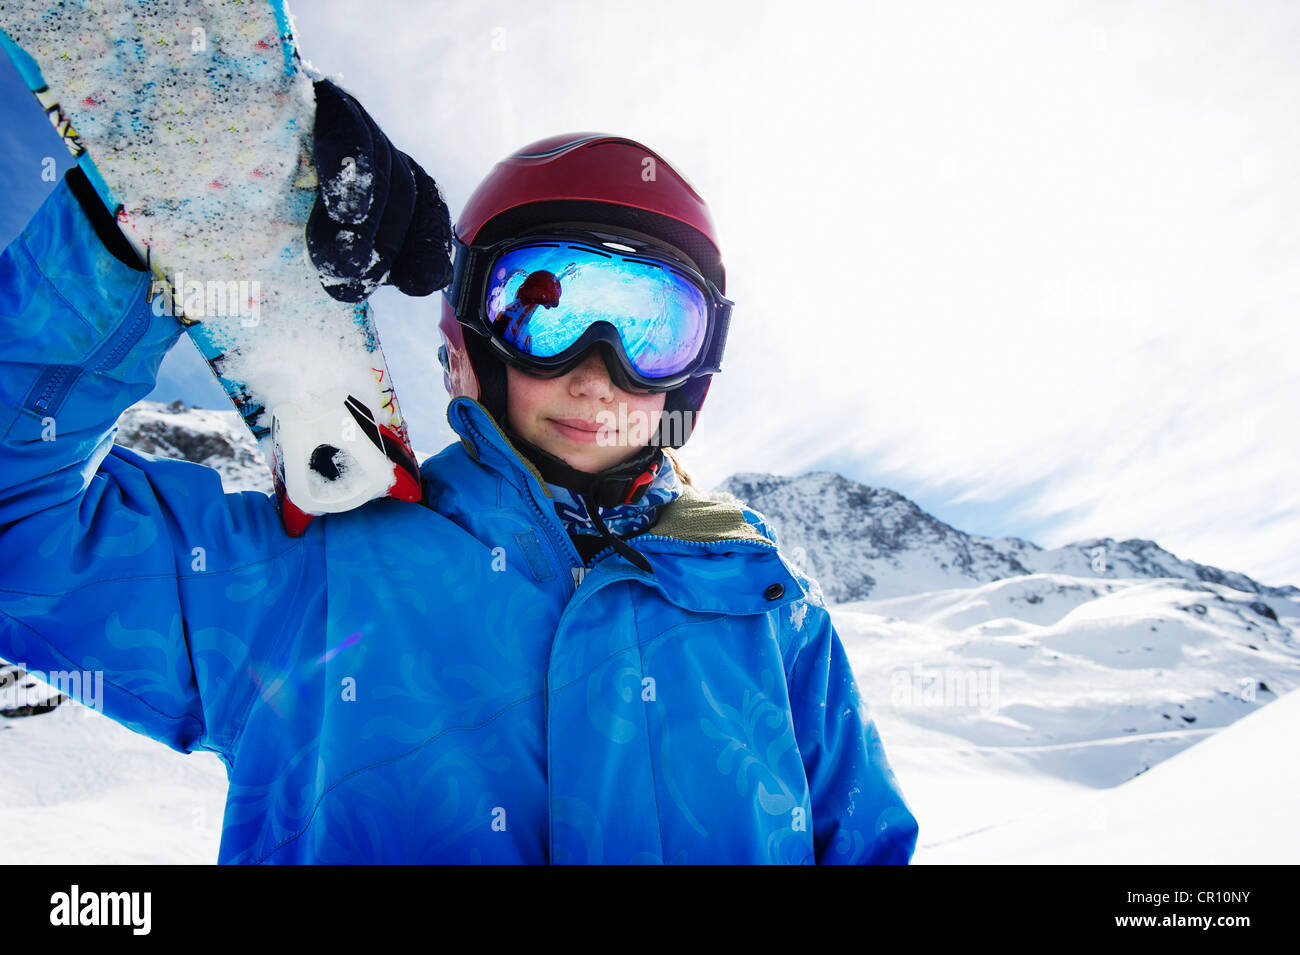 Boy holding skis on snowy mountain Stock Photo